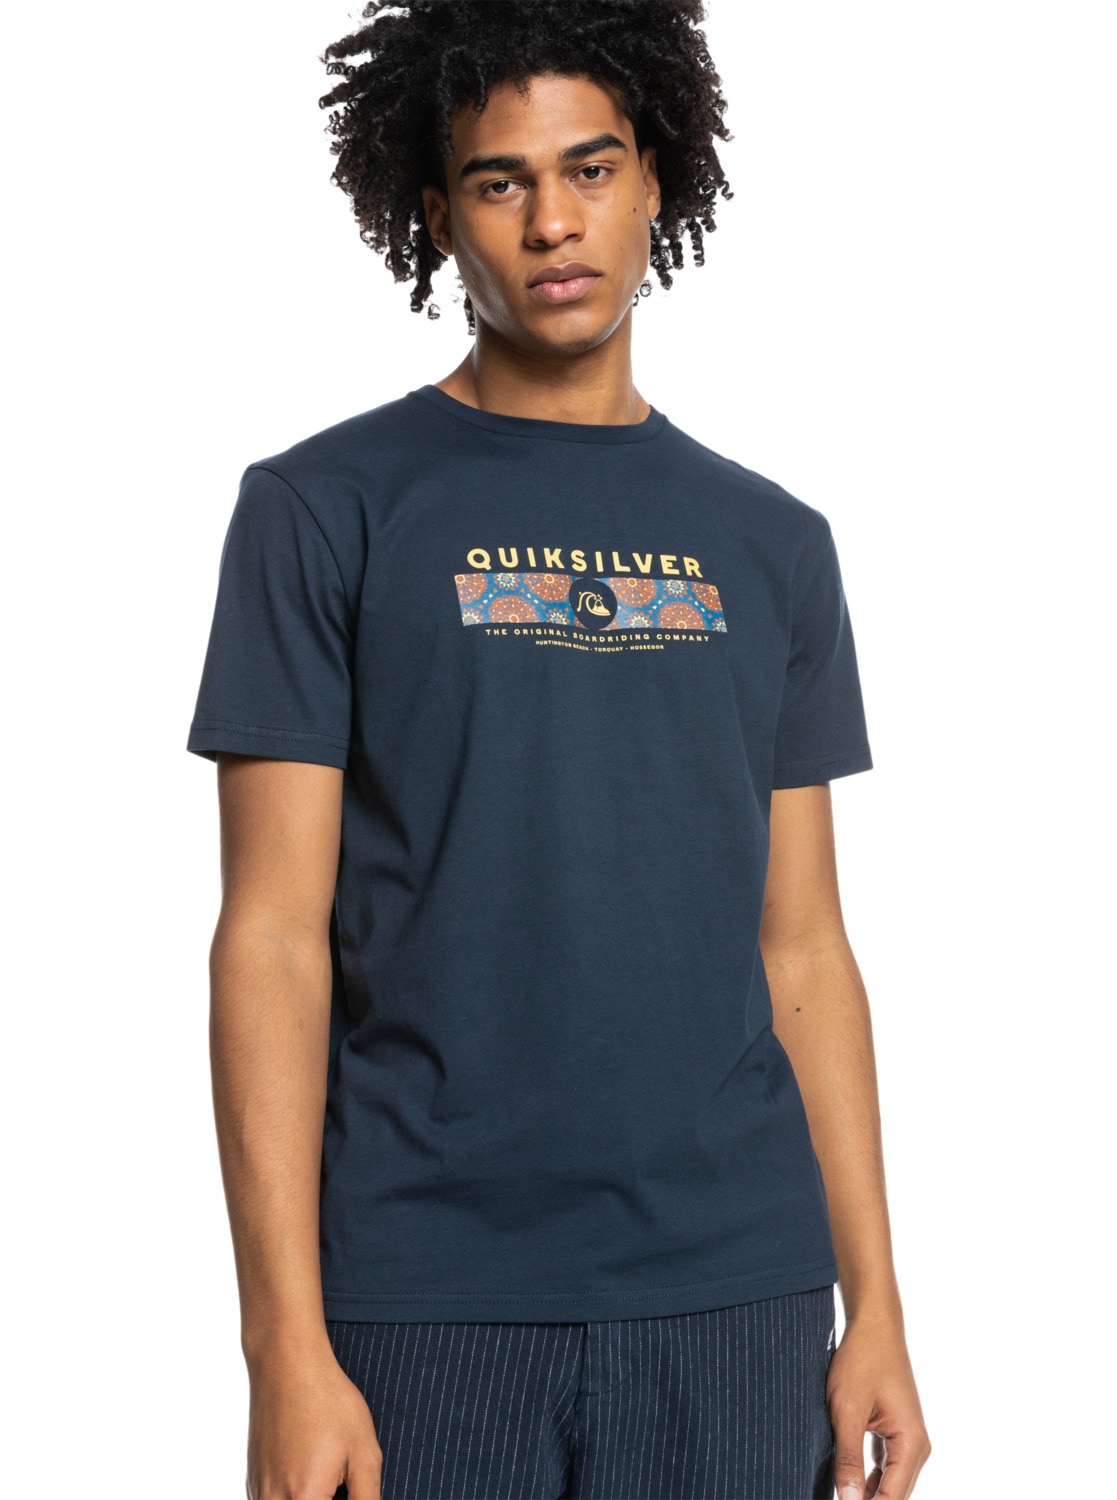 Quiksilver T-Shirt »Wrap It Up« von Quiksilver